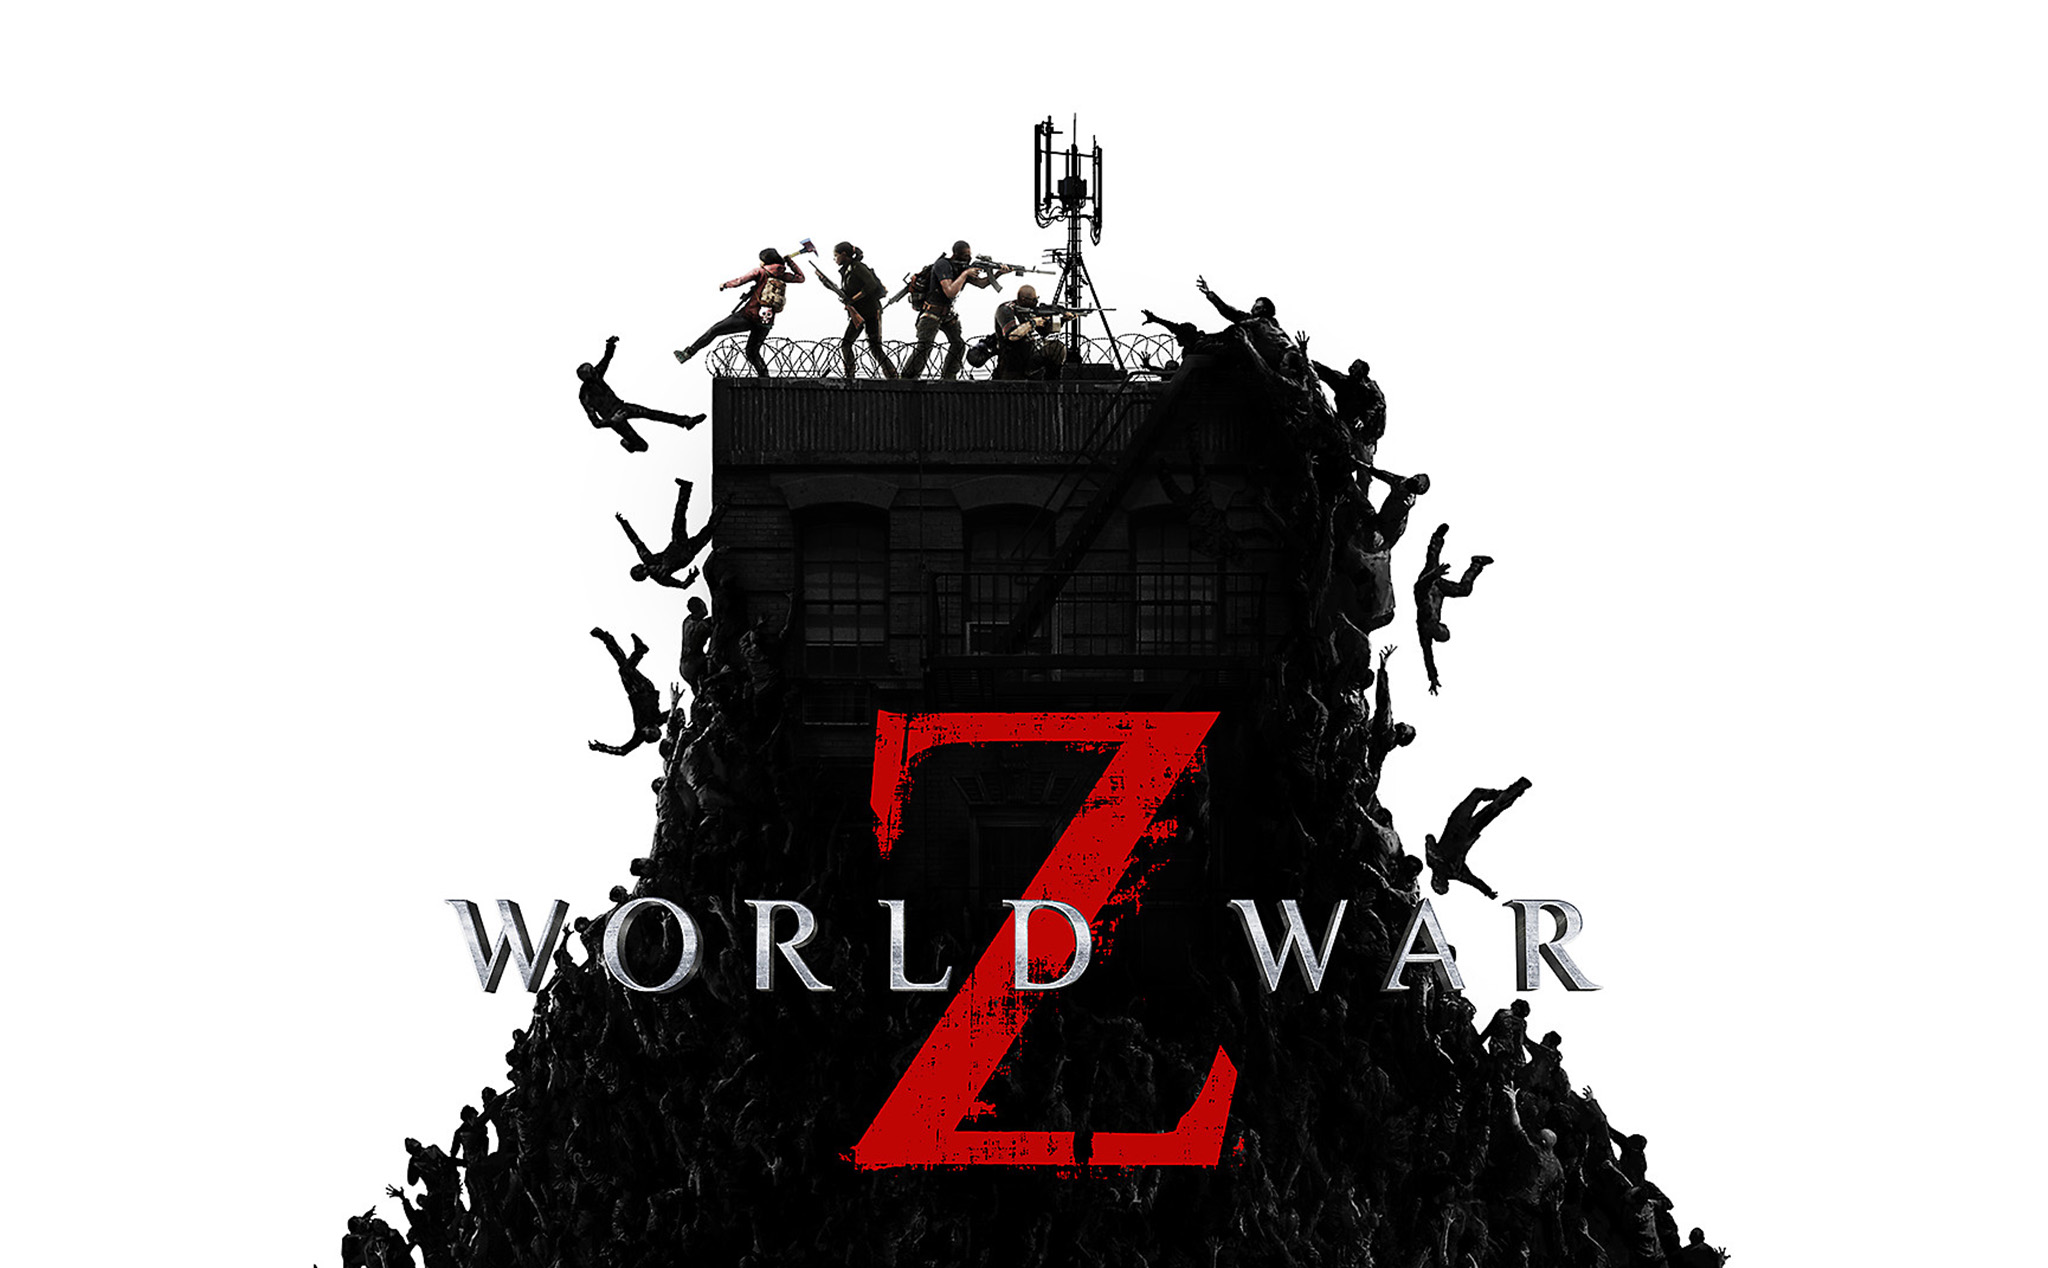 [GamePC] World War Z đang miễn phí, lập team diệt zombie nào anh em